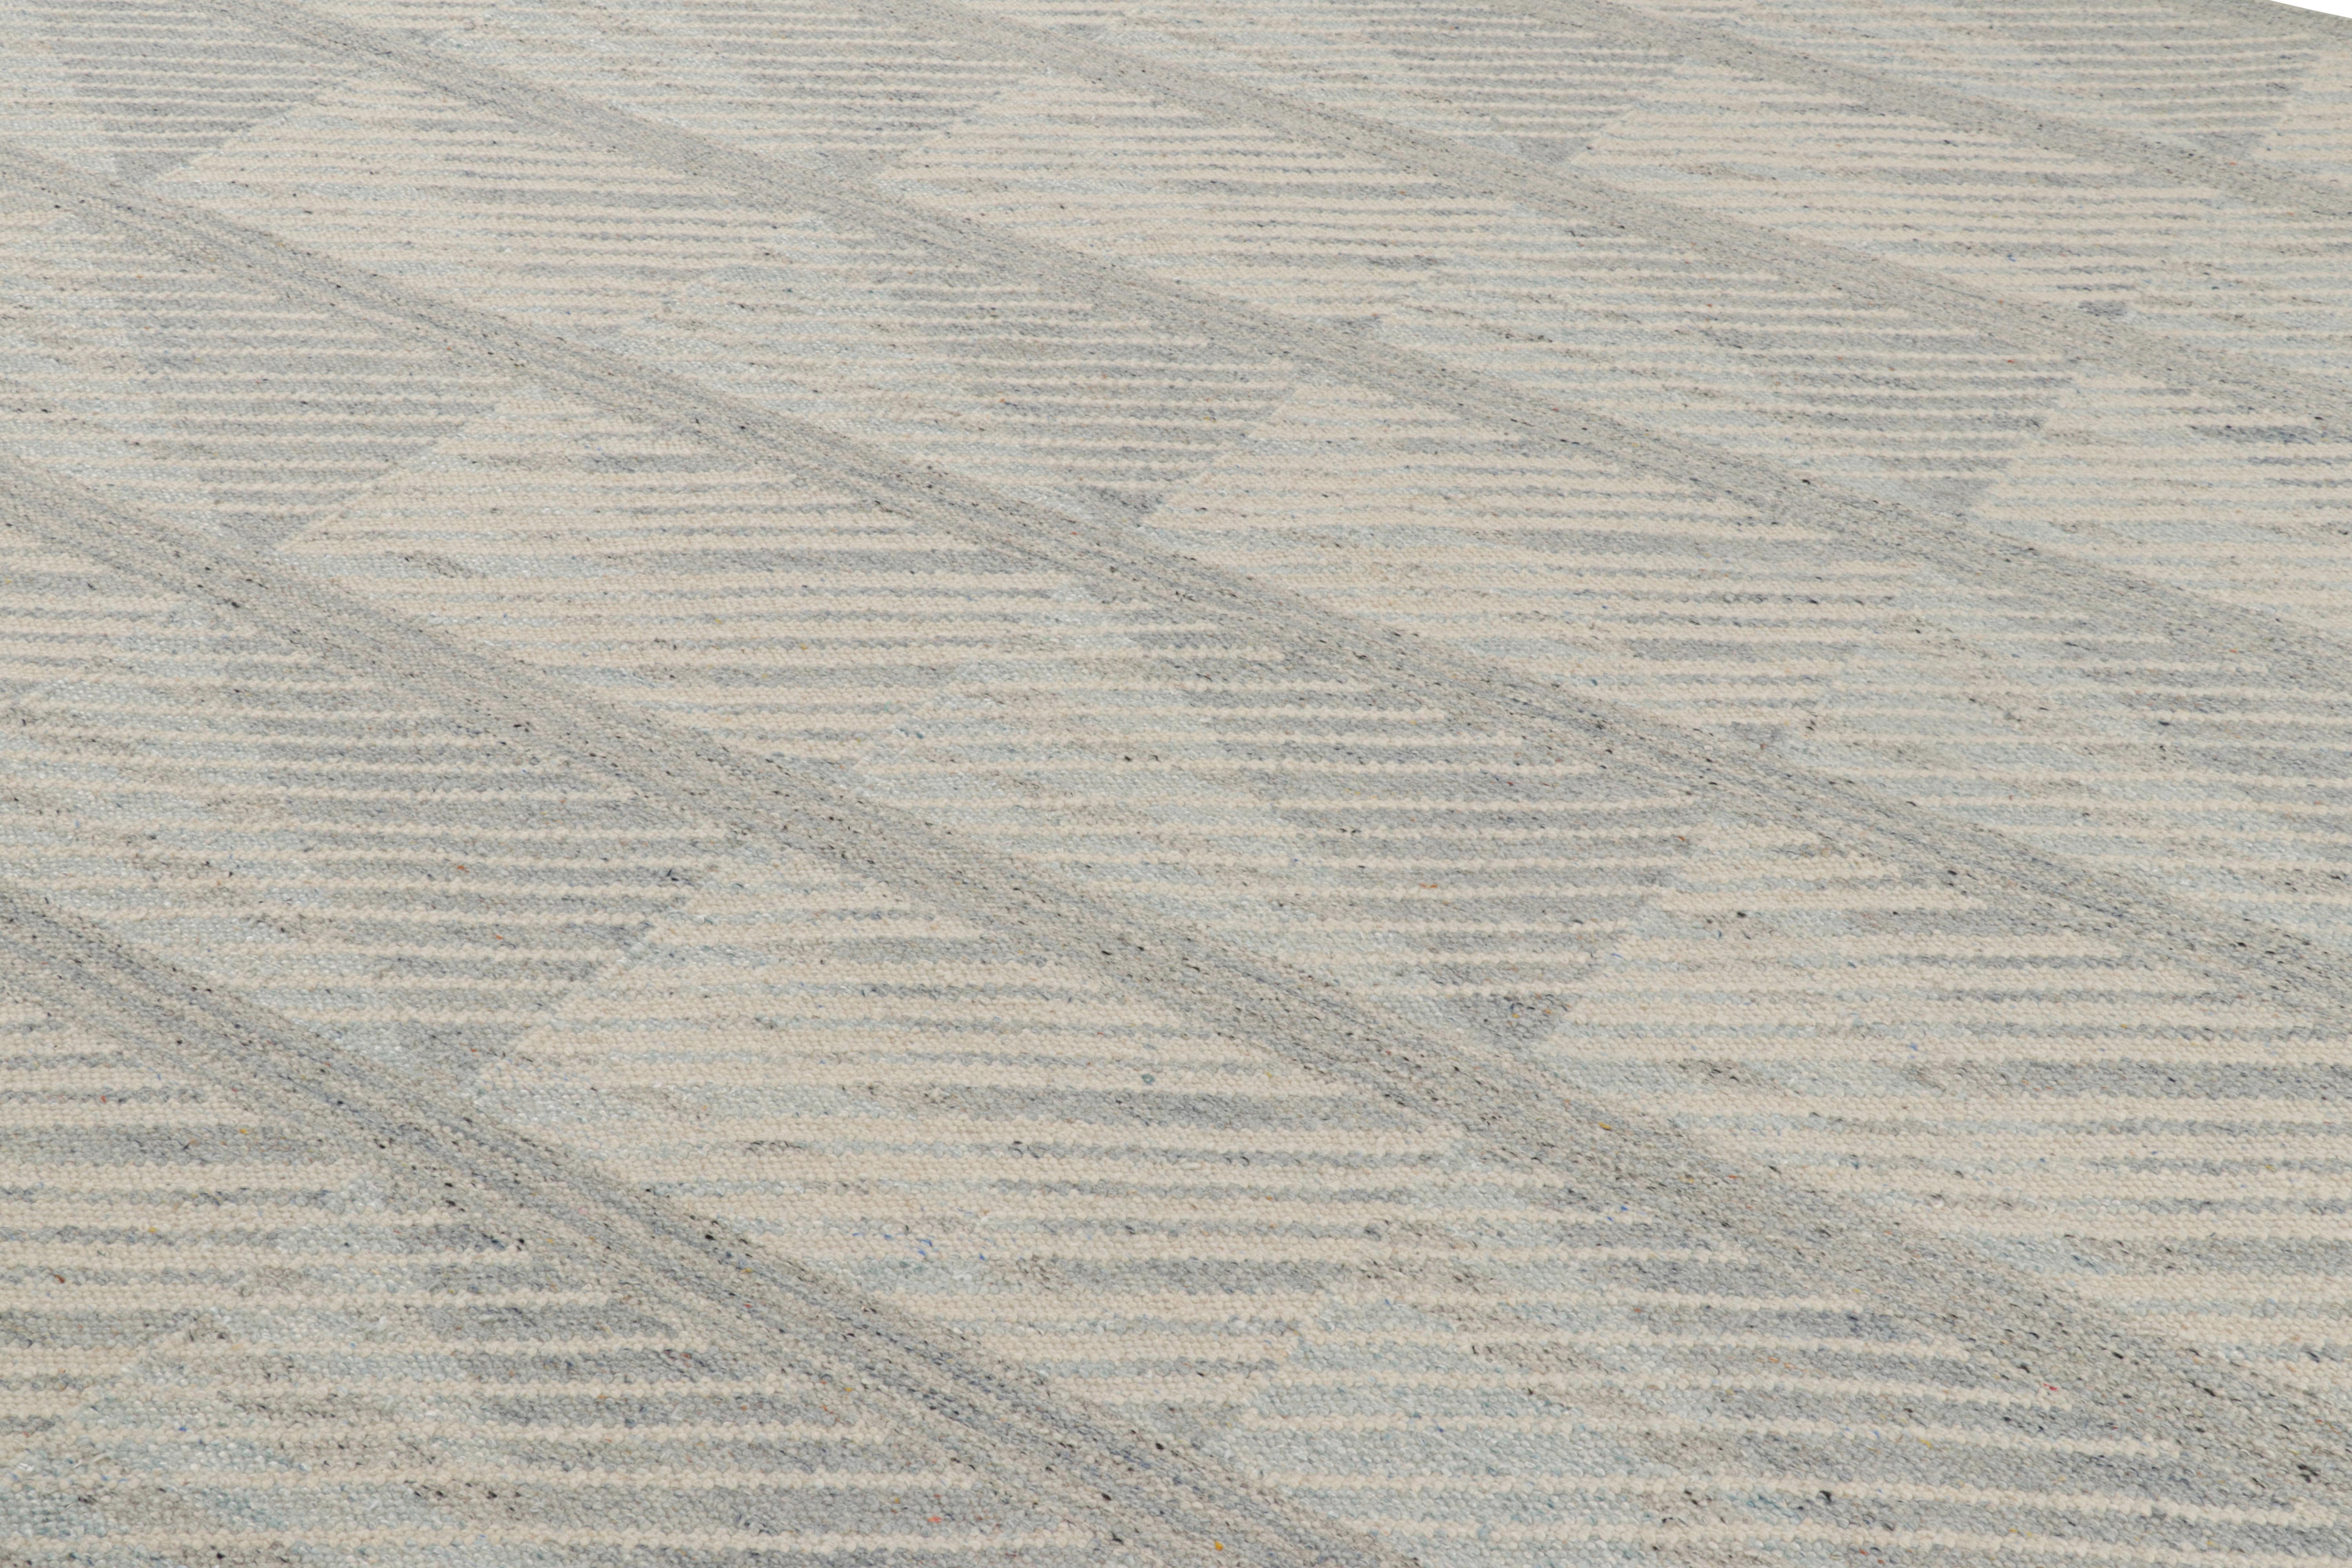 Ce tapis 10x14 est un nouvel ajout audacieux à la Collection S &New de Rug & Kilim. Tissé à la main dans un tissage plat en laine avec également des fils naturels non teints, son design s'inspire des modèles minimalistes suédois.

Sur le Design :